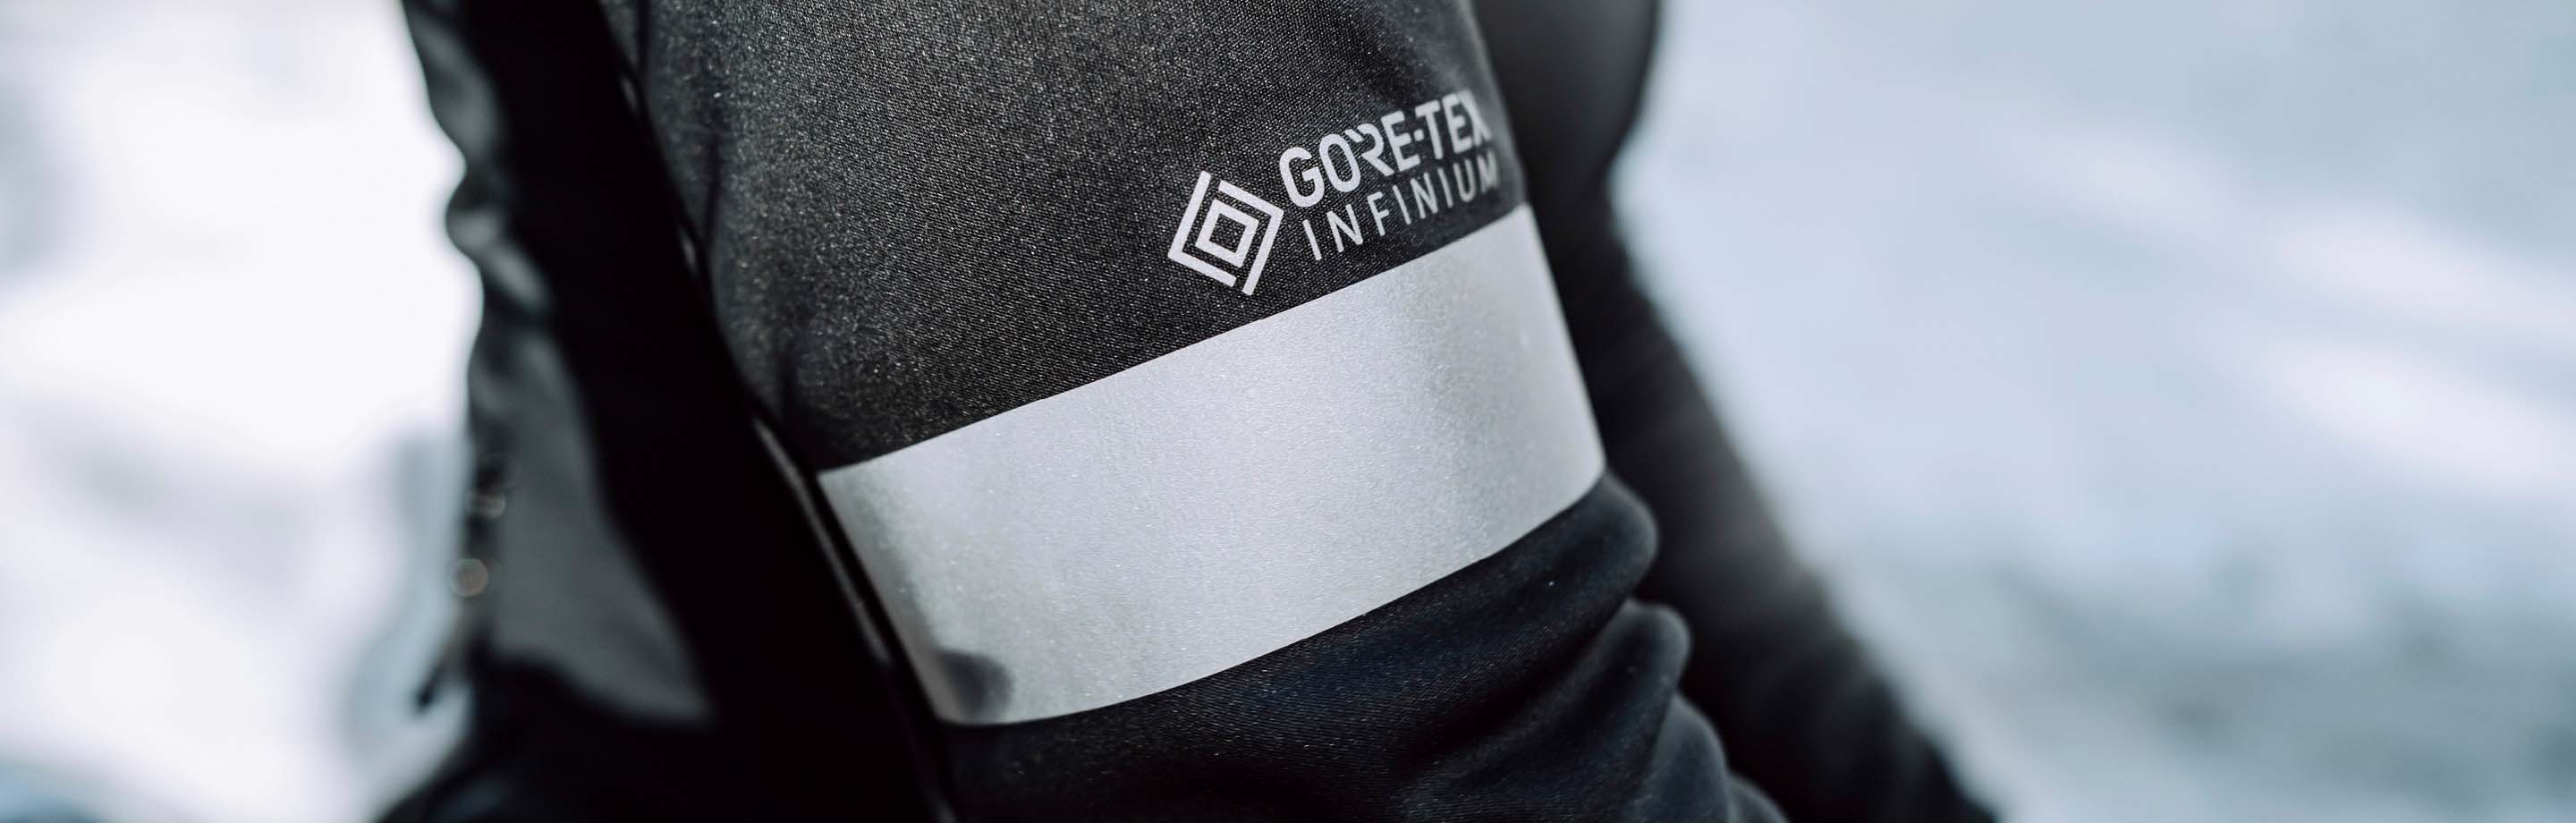 GORE-TEX INFINIUM™ – Funktionelle Radbekleidung für einen aktiven Lebensstil